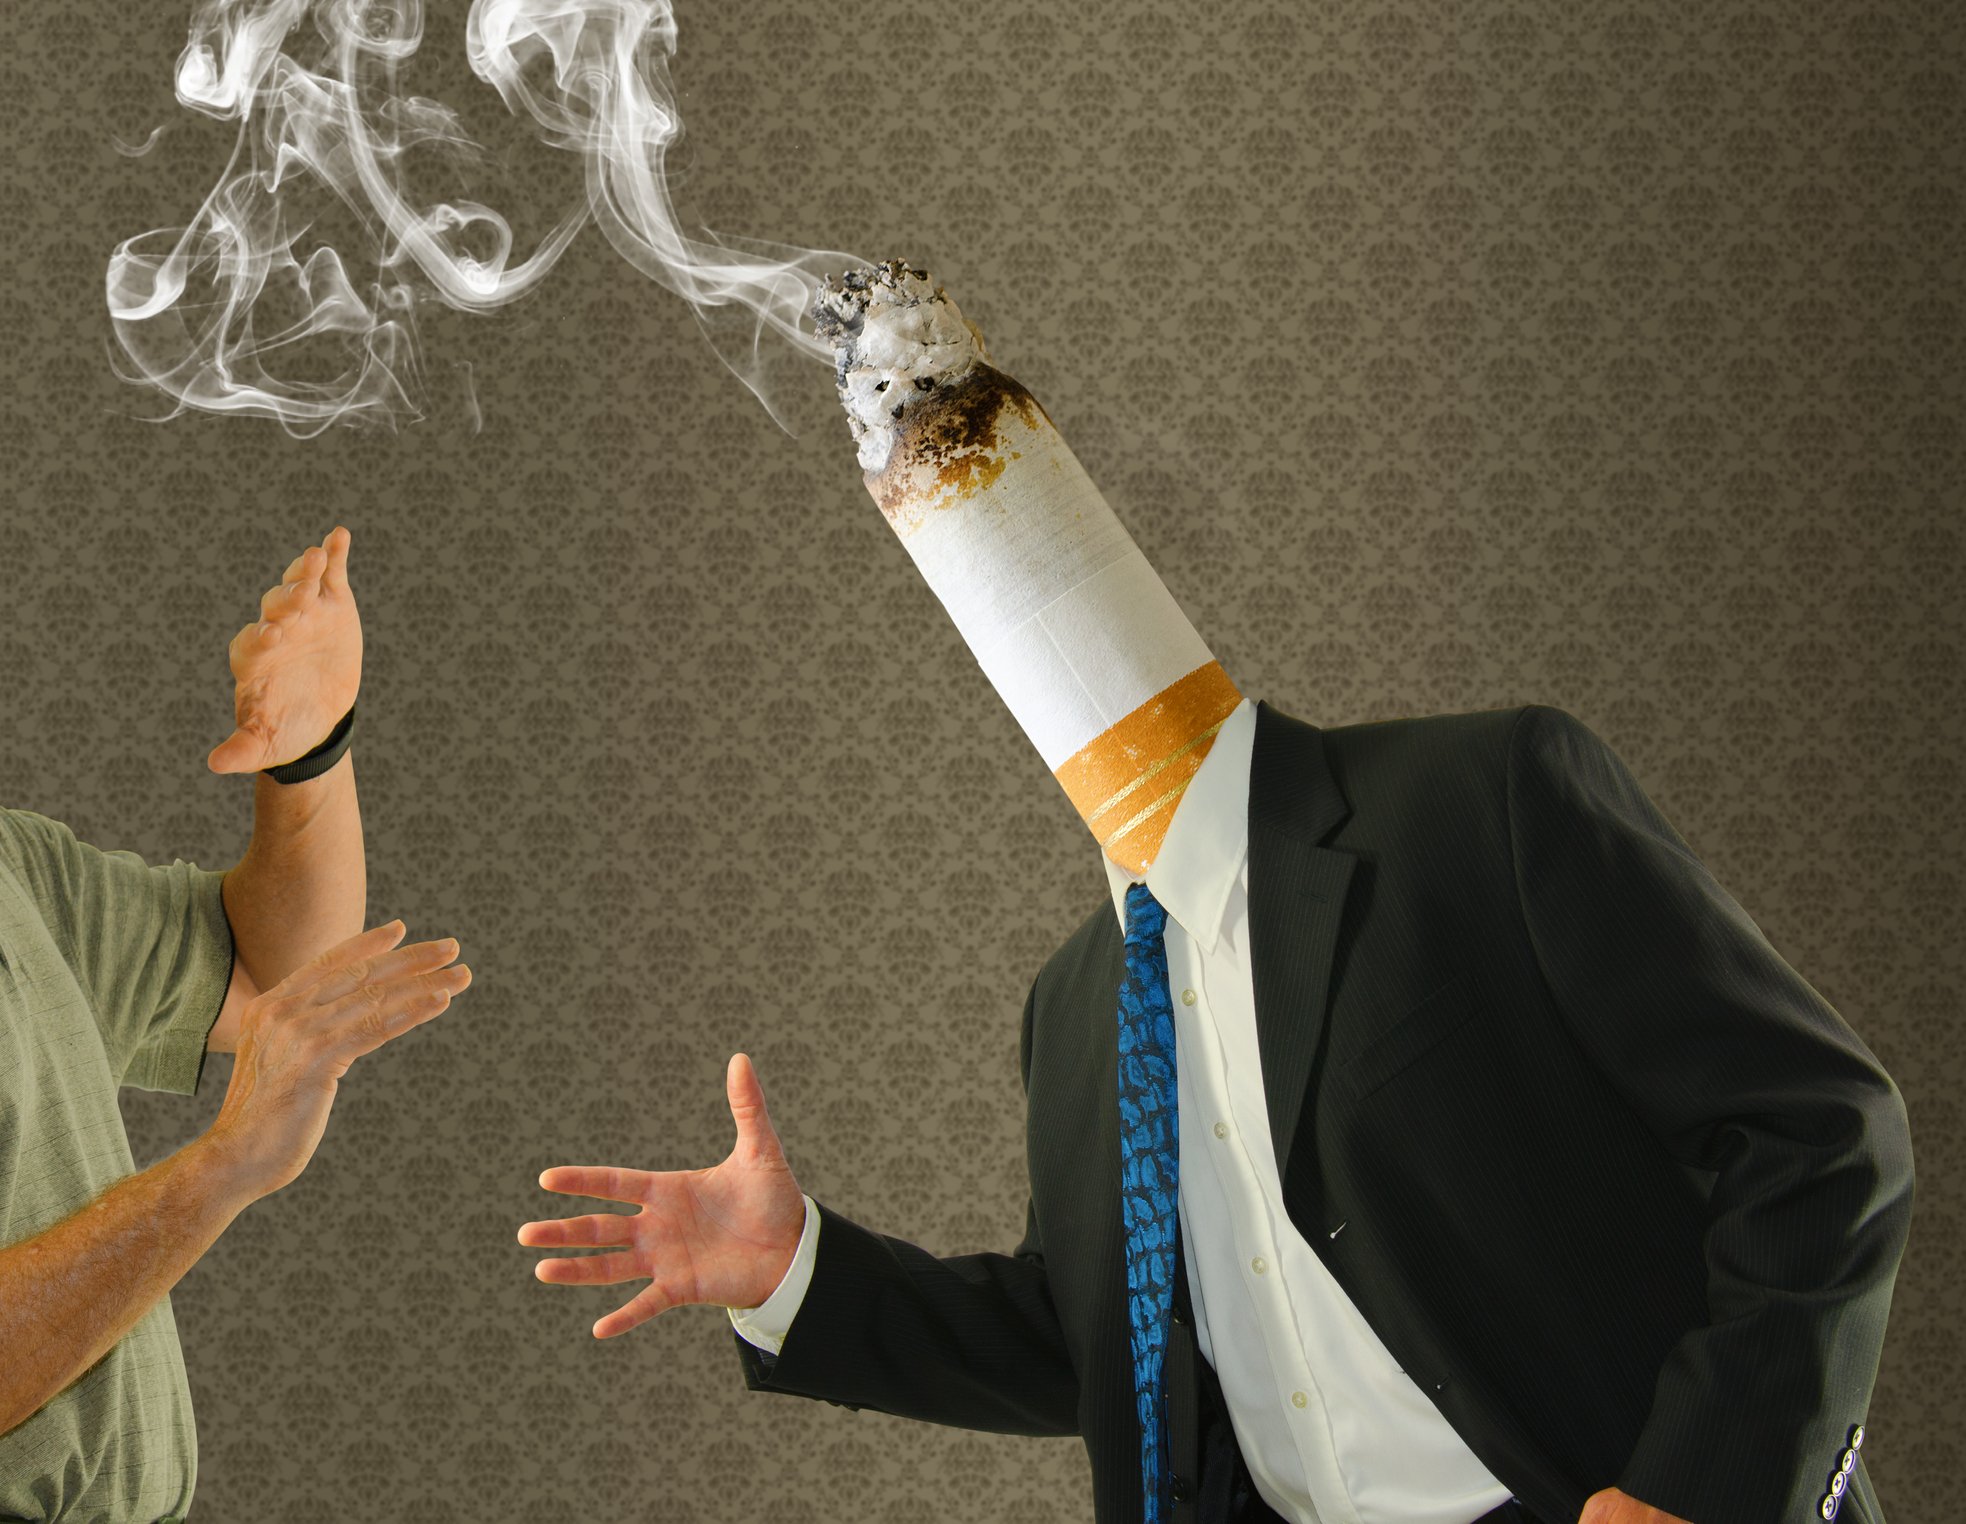 káros-e a dohányzás hirtelen leszokása?